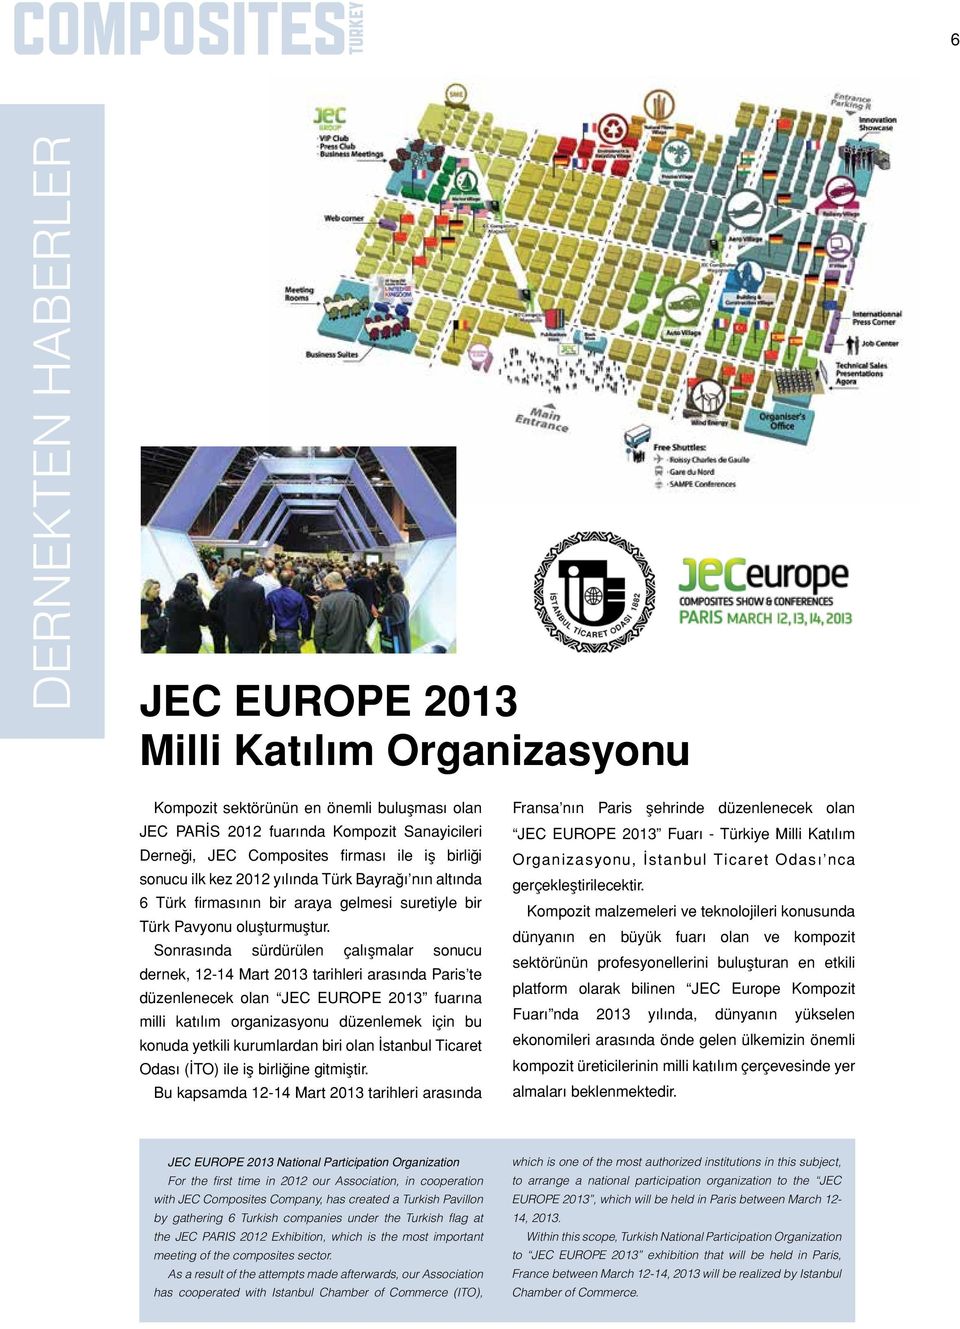 Sonrasında sürdürülen çalışmalar sonucu dernek, 12-14 Mart 2013 tarihleri arasında Paris te düzenlenecek olan JEC EUROPE 2013 fuarına milli katılım organizasyonu düzenlemek için bu konuda yetkili